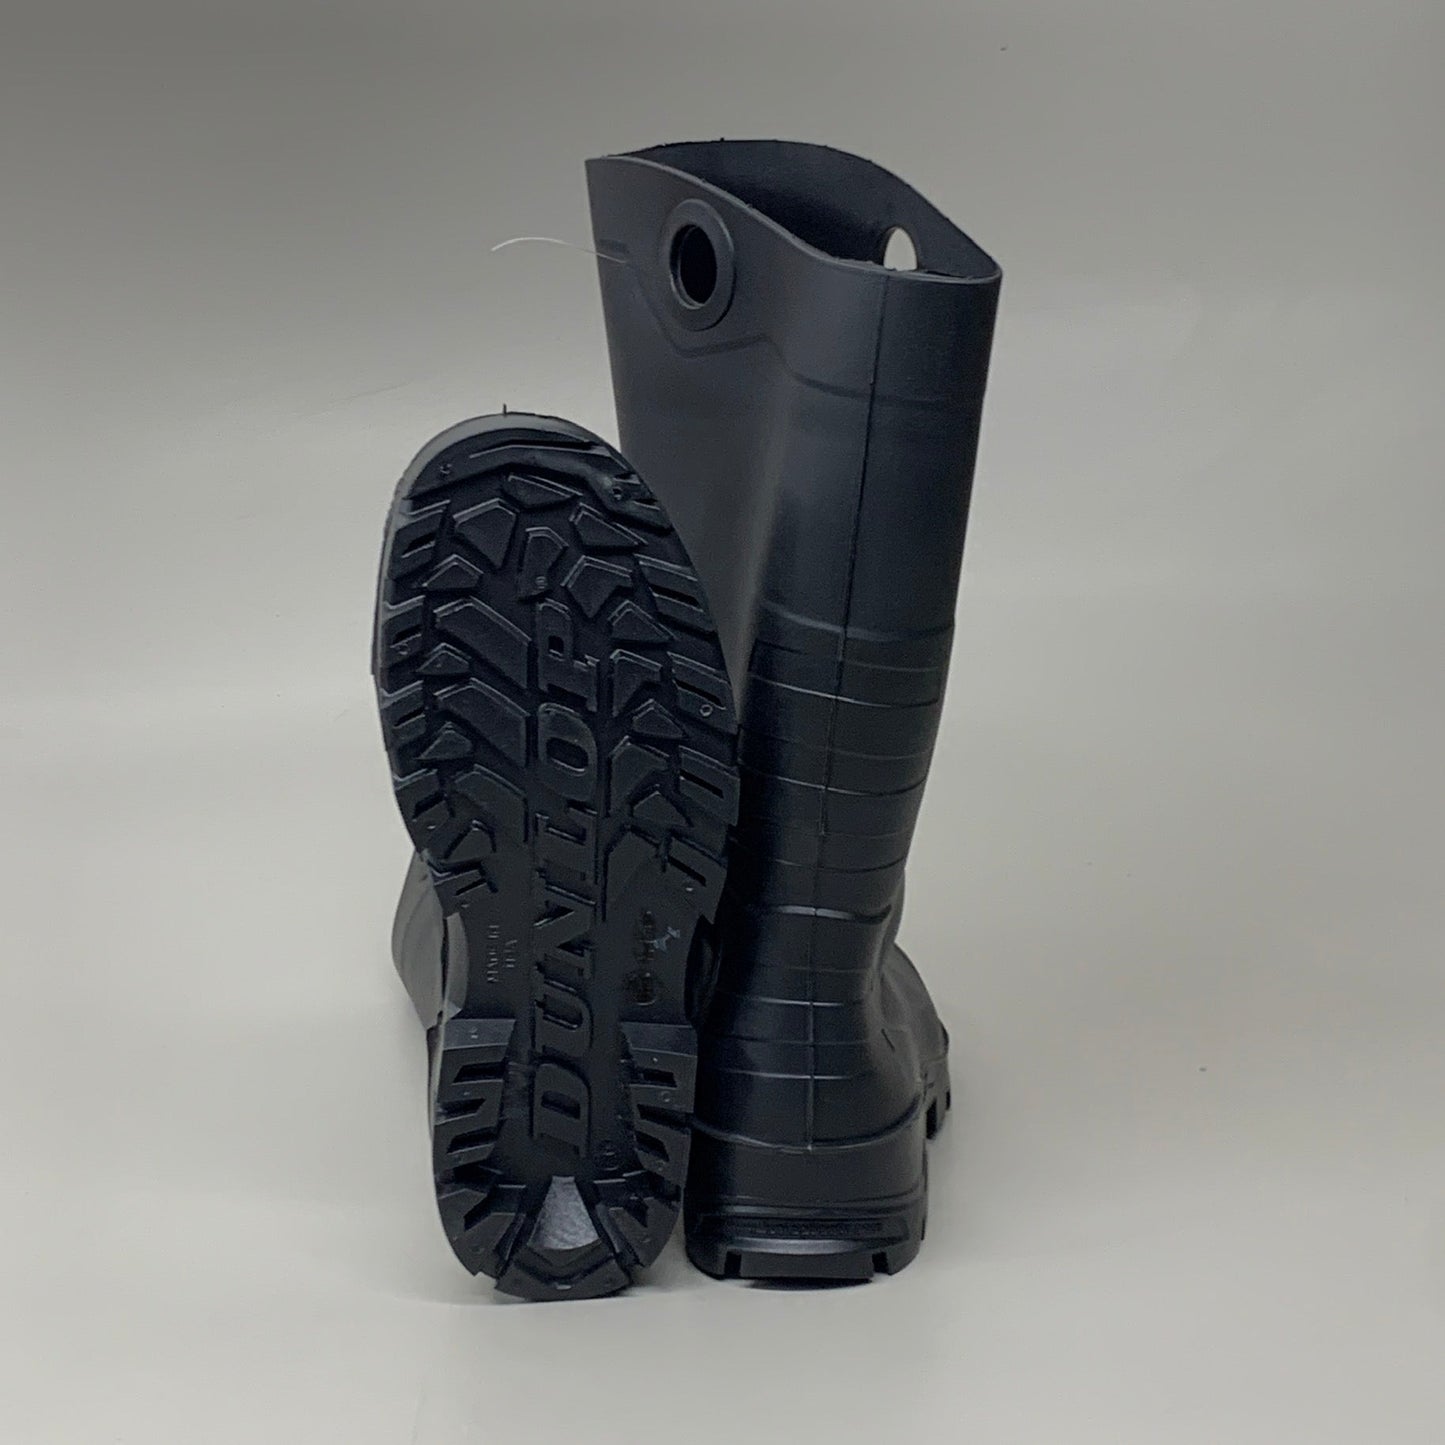 DUNLOP Steel Toe Safety Boots Waterproof Black Sz M 6 W 8 #86776